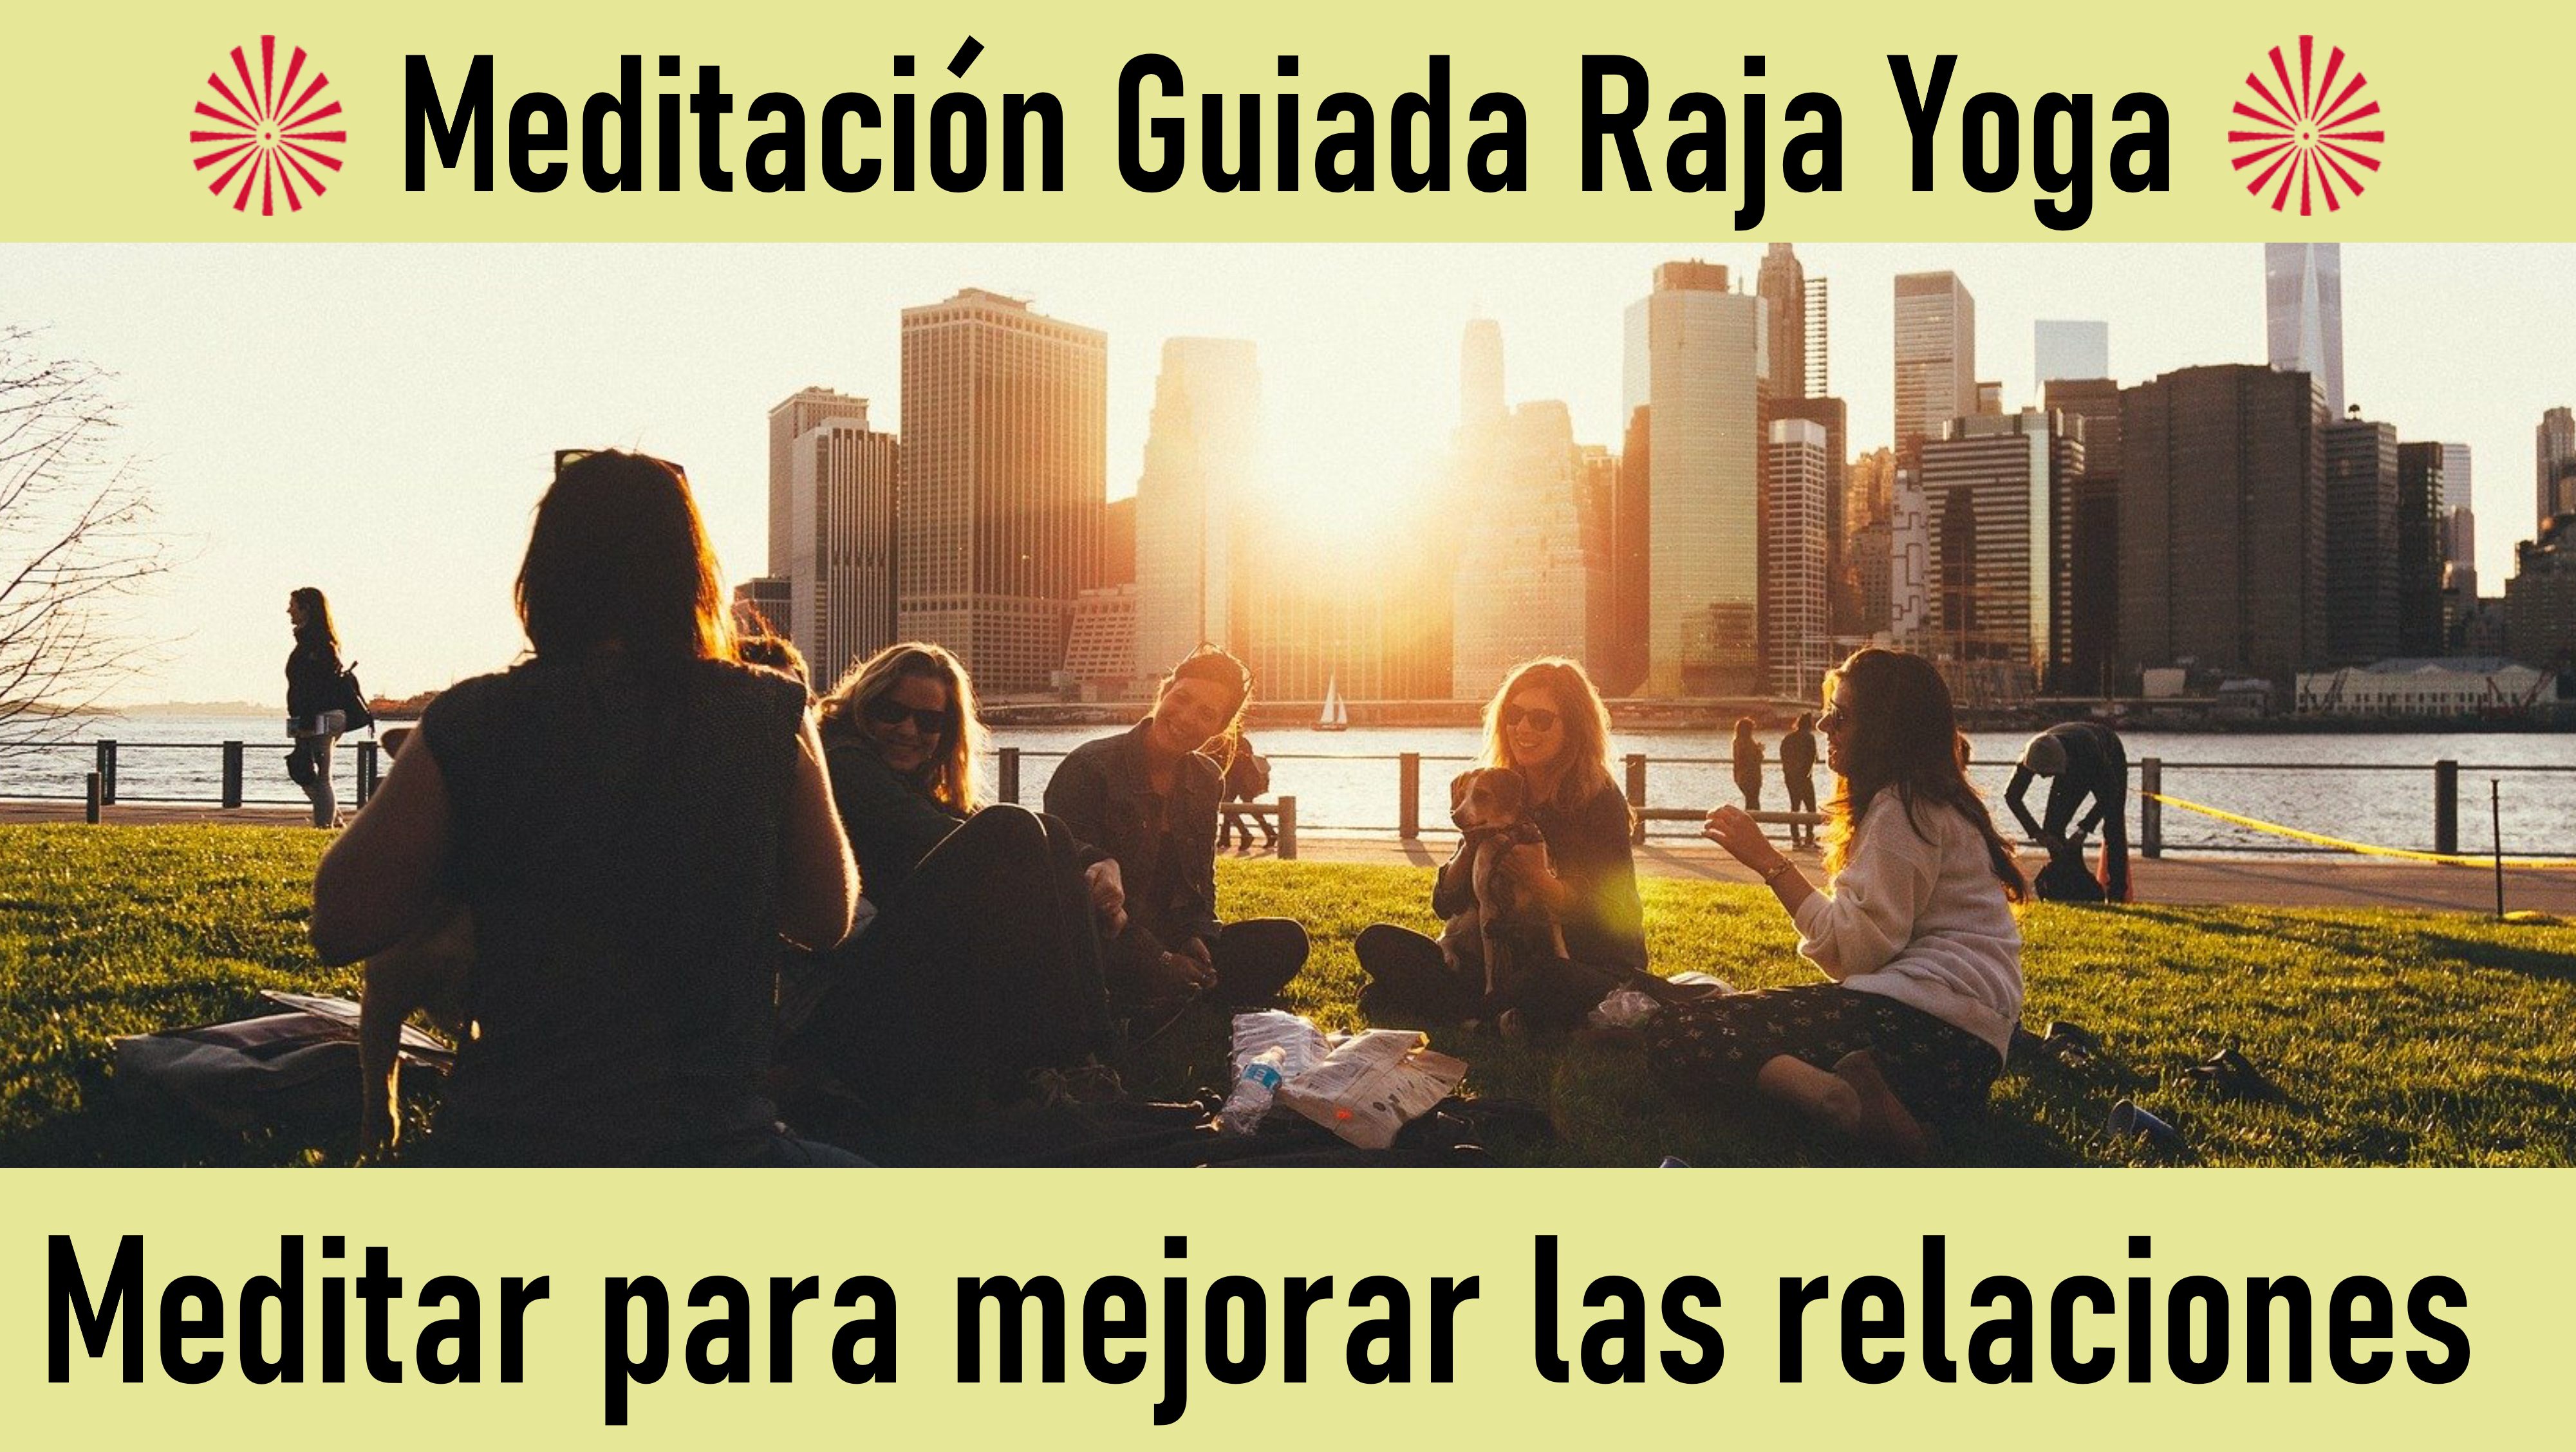 Meditación Raja Yoga: Meditar para Mejorar las Relaciones (20 Mayo 2020) On-line desde Sevilla